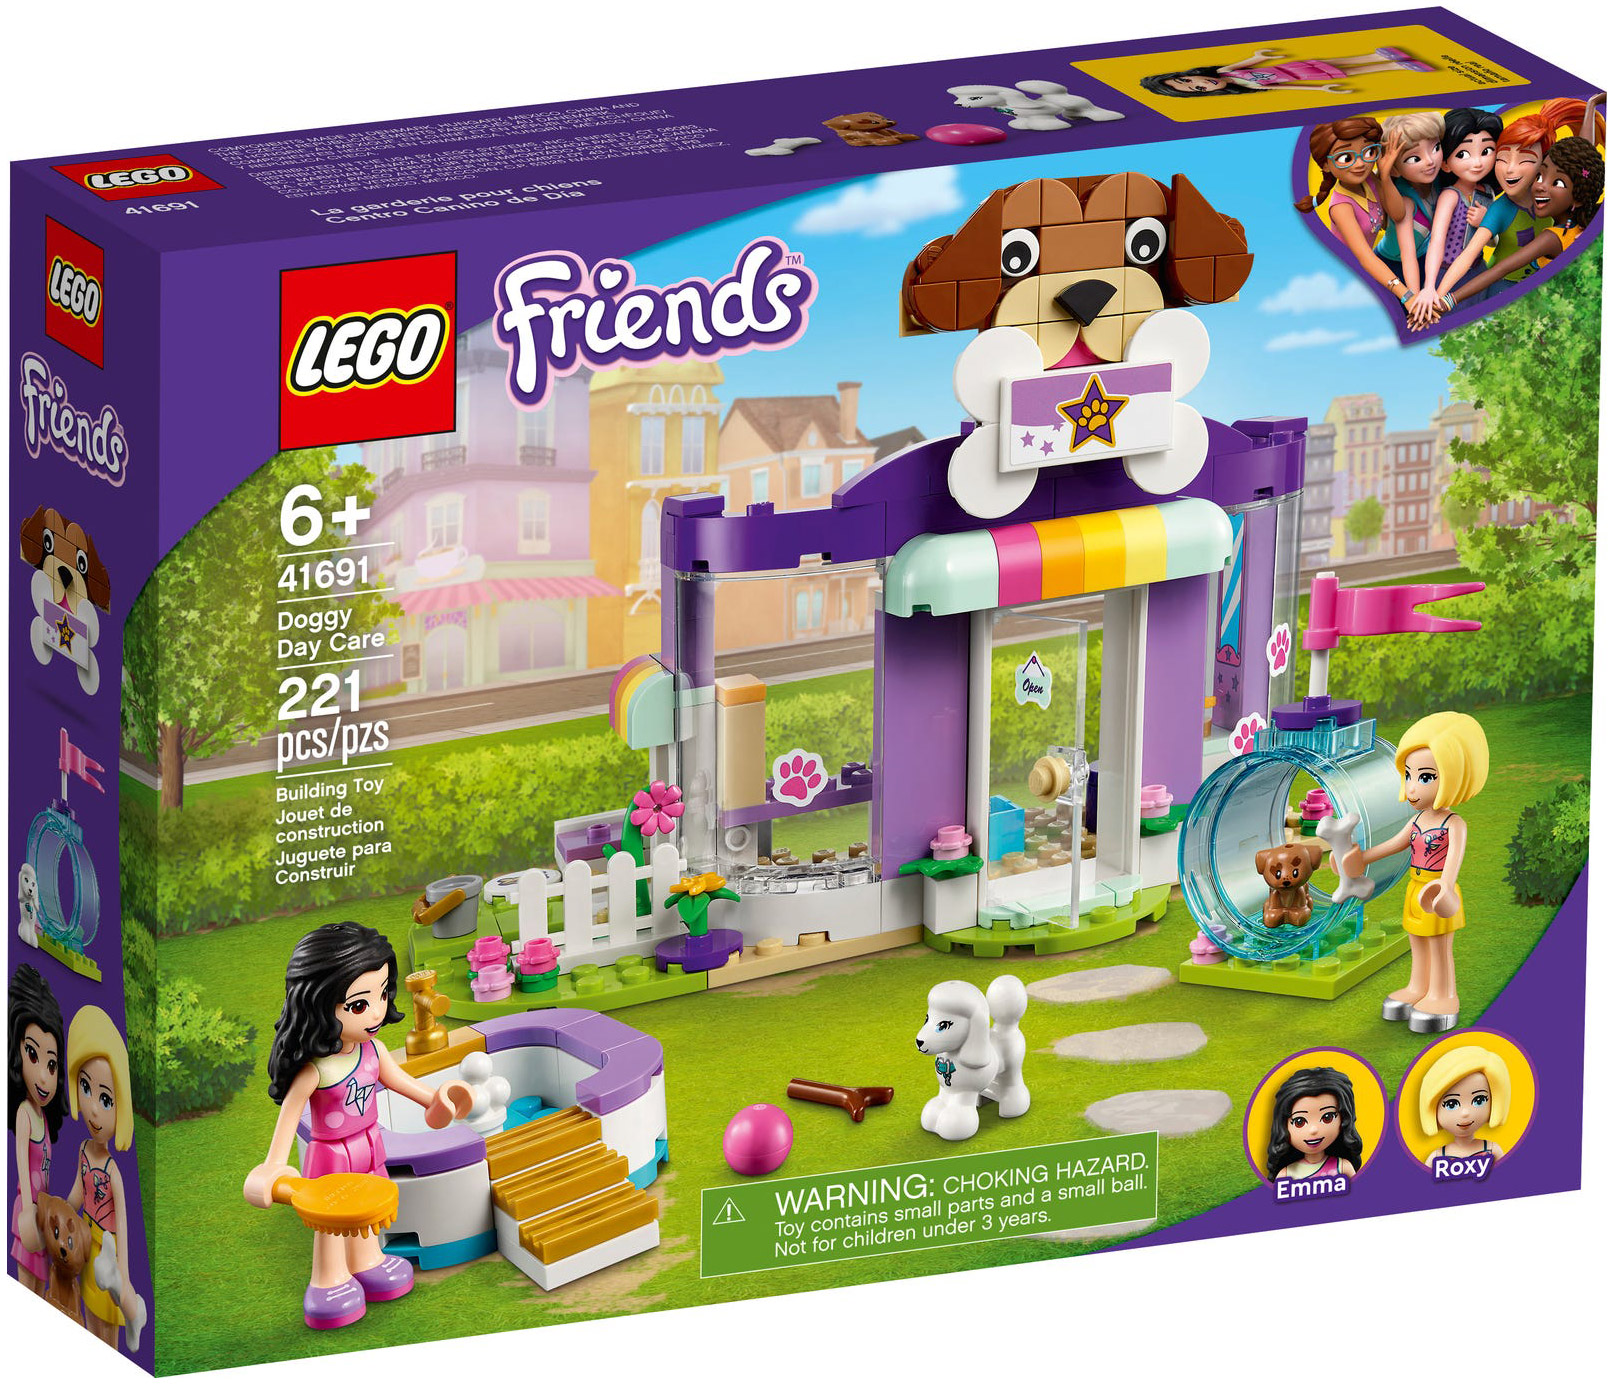 LEGO Friends singes petit ourson et adorable petit chien PRODUIT NEUF Mer 